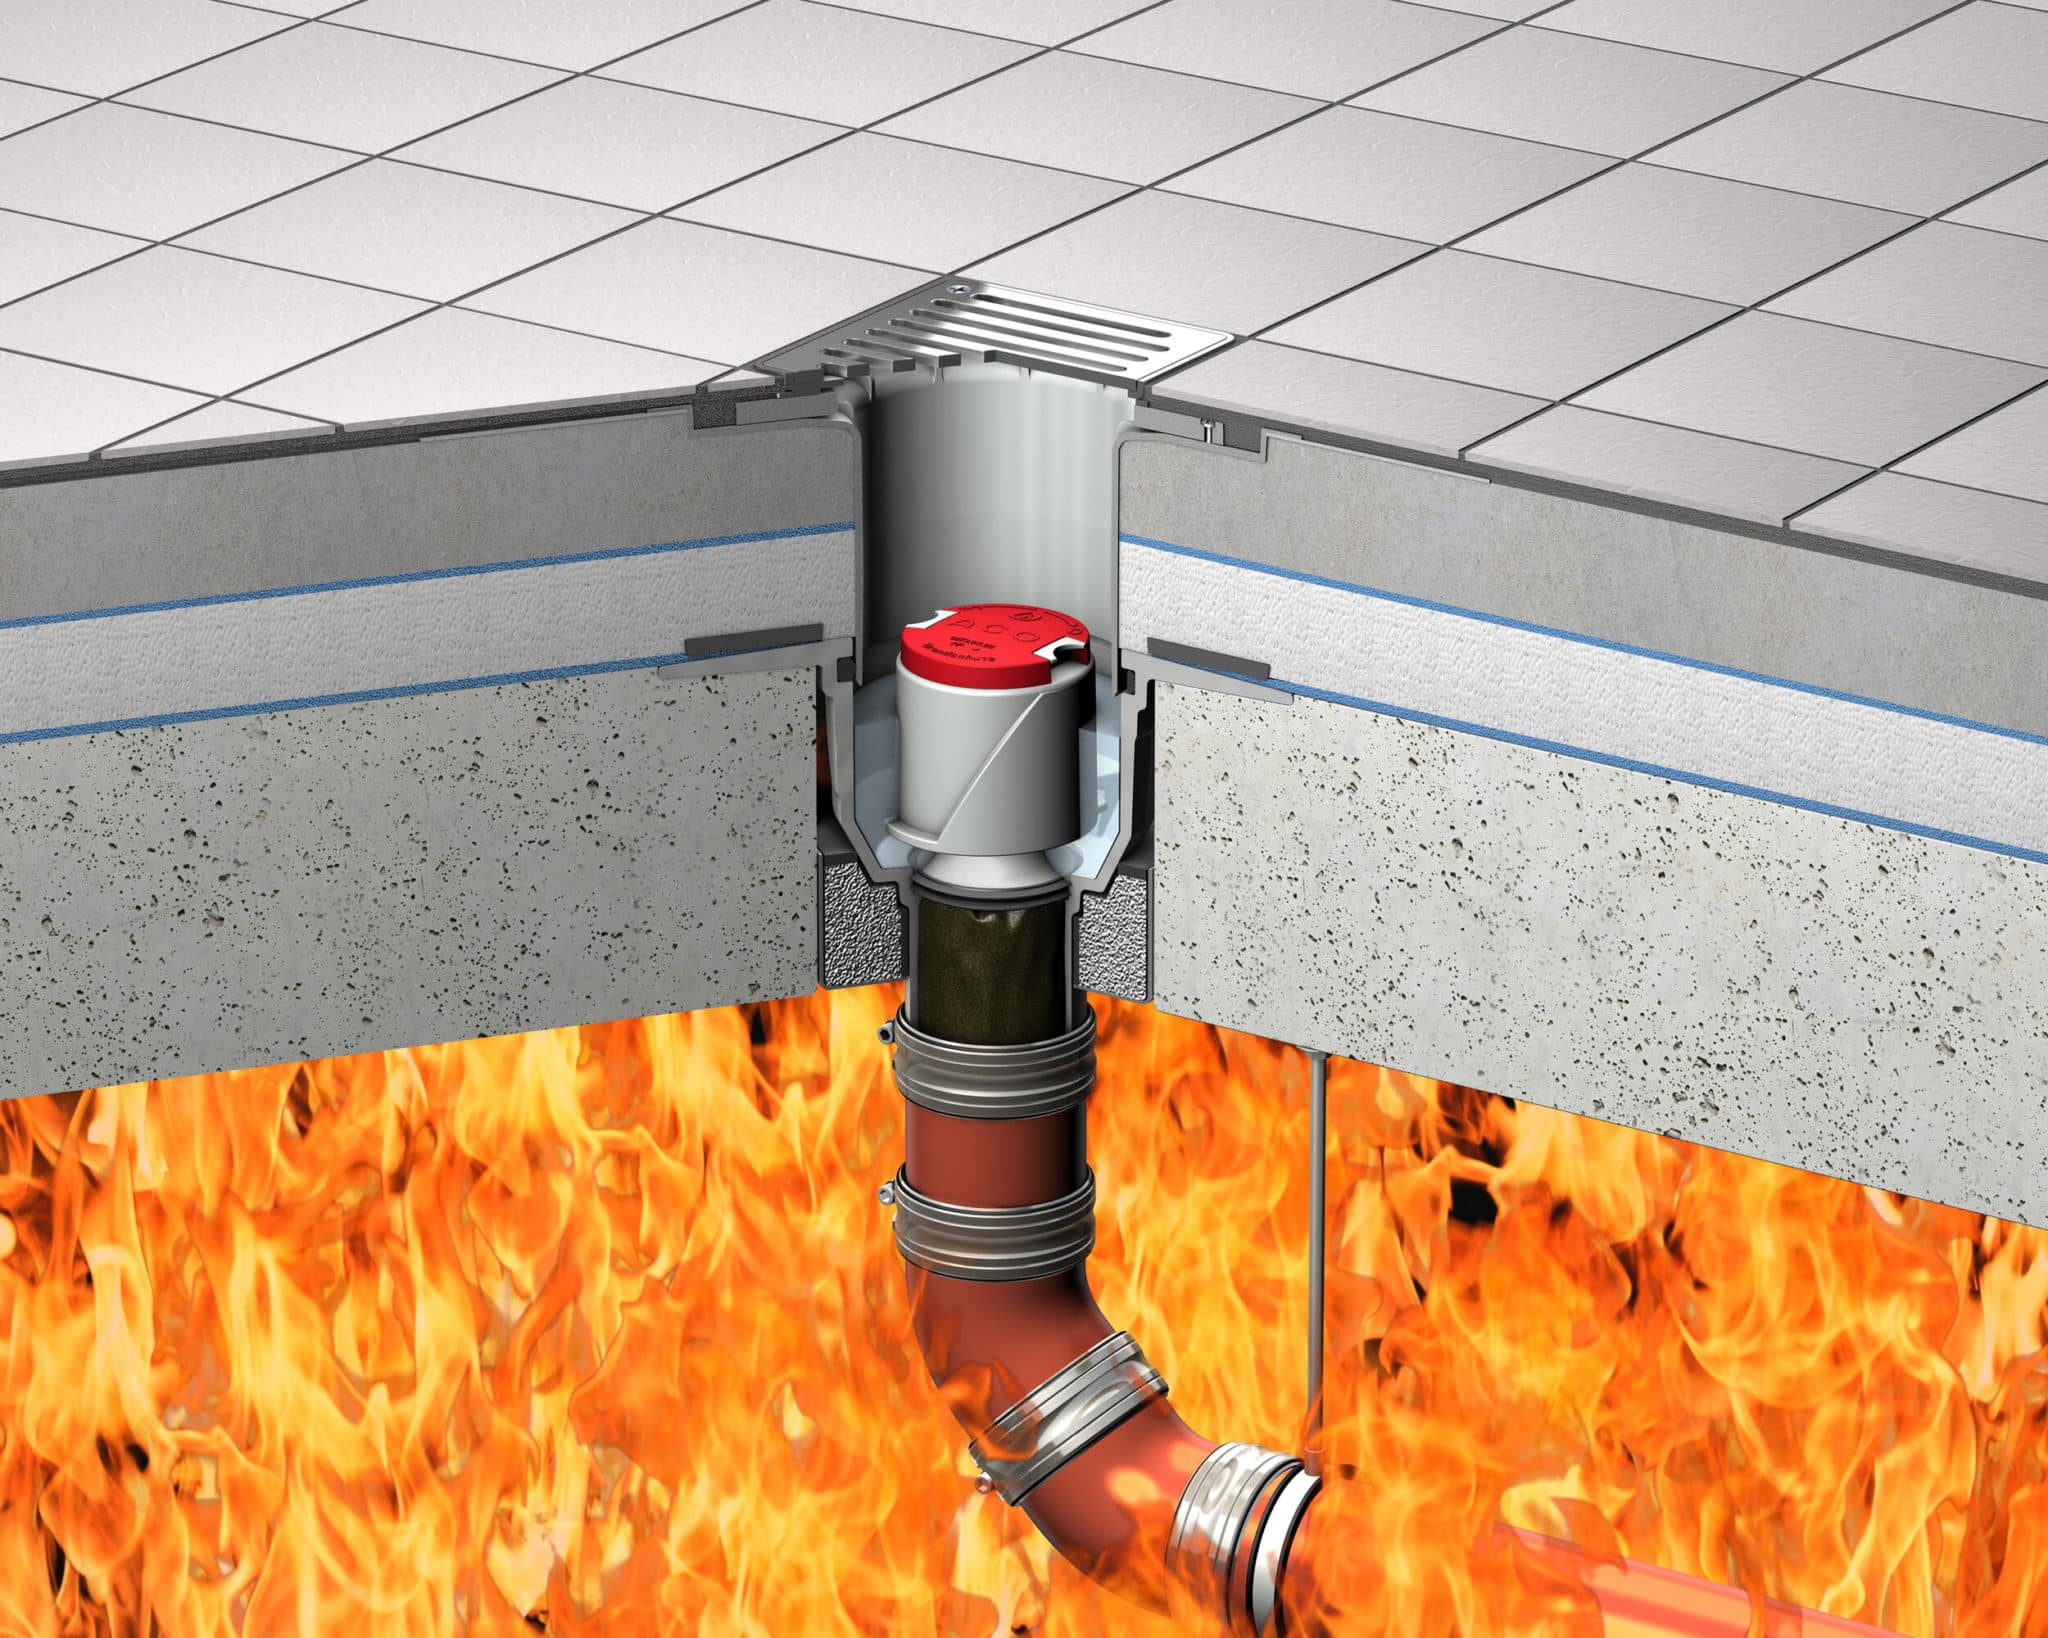 ACO Bodenablauf Passavant mit aktivierter Brandschutz-Kartusche gegen Feuer von unten.© ACO Haustechnik